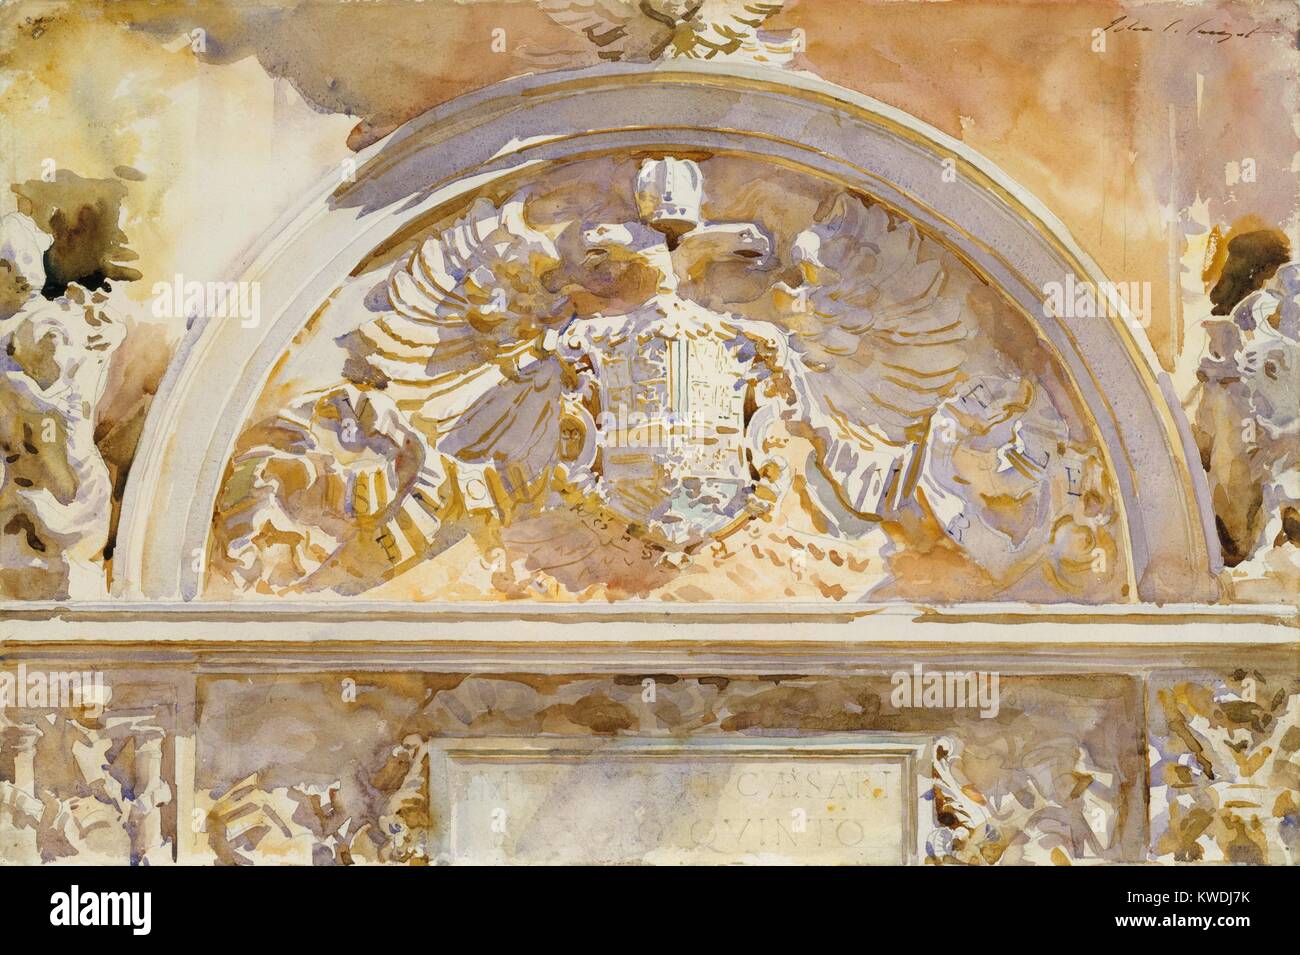 Blason de Charles V D'ESPAGNE, par John Singer Sargent, 1912, American de l'aquarelle. Sargent a fait un dessin au graphite sur laquelle il peint des tons chauds jaune saturé notamment. Il transforme un relief en pierre sculpté monochromatiques avec des couleurs éclatantes. L'insigne héraldique est à l'Alhambra à Grenade, Espagne (BSLOC 2017 9 48) Banque D'Images